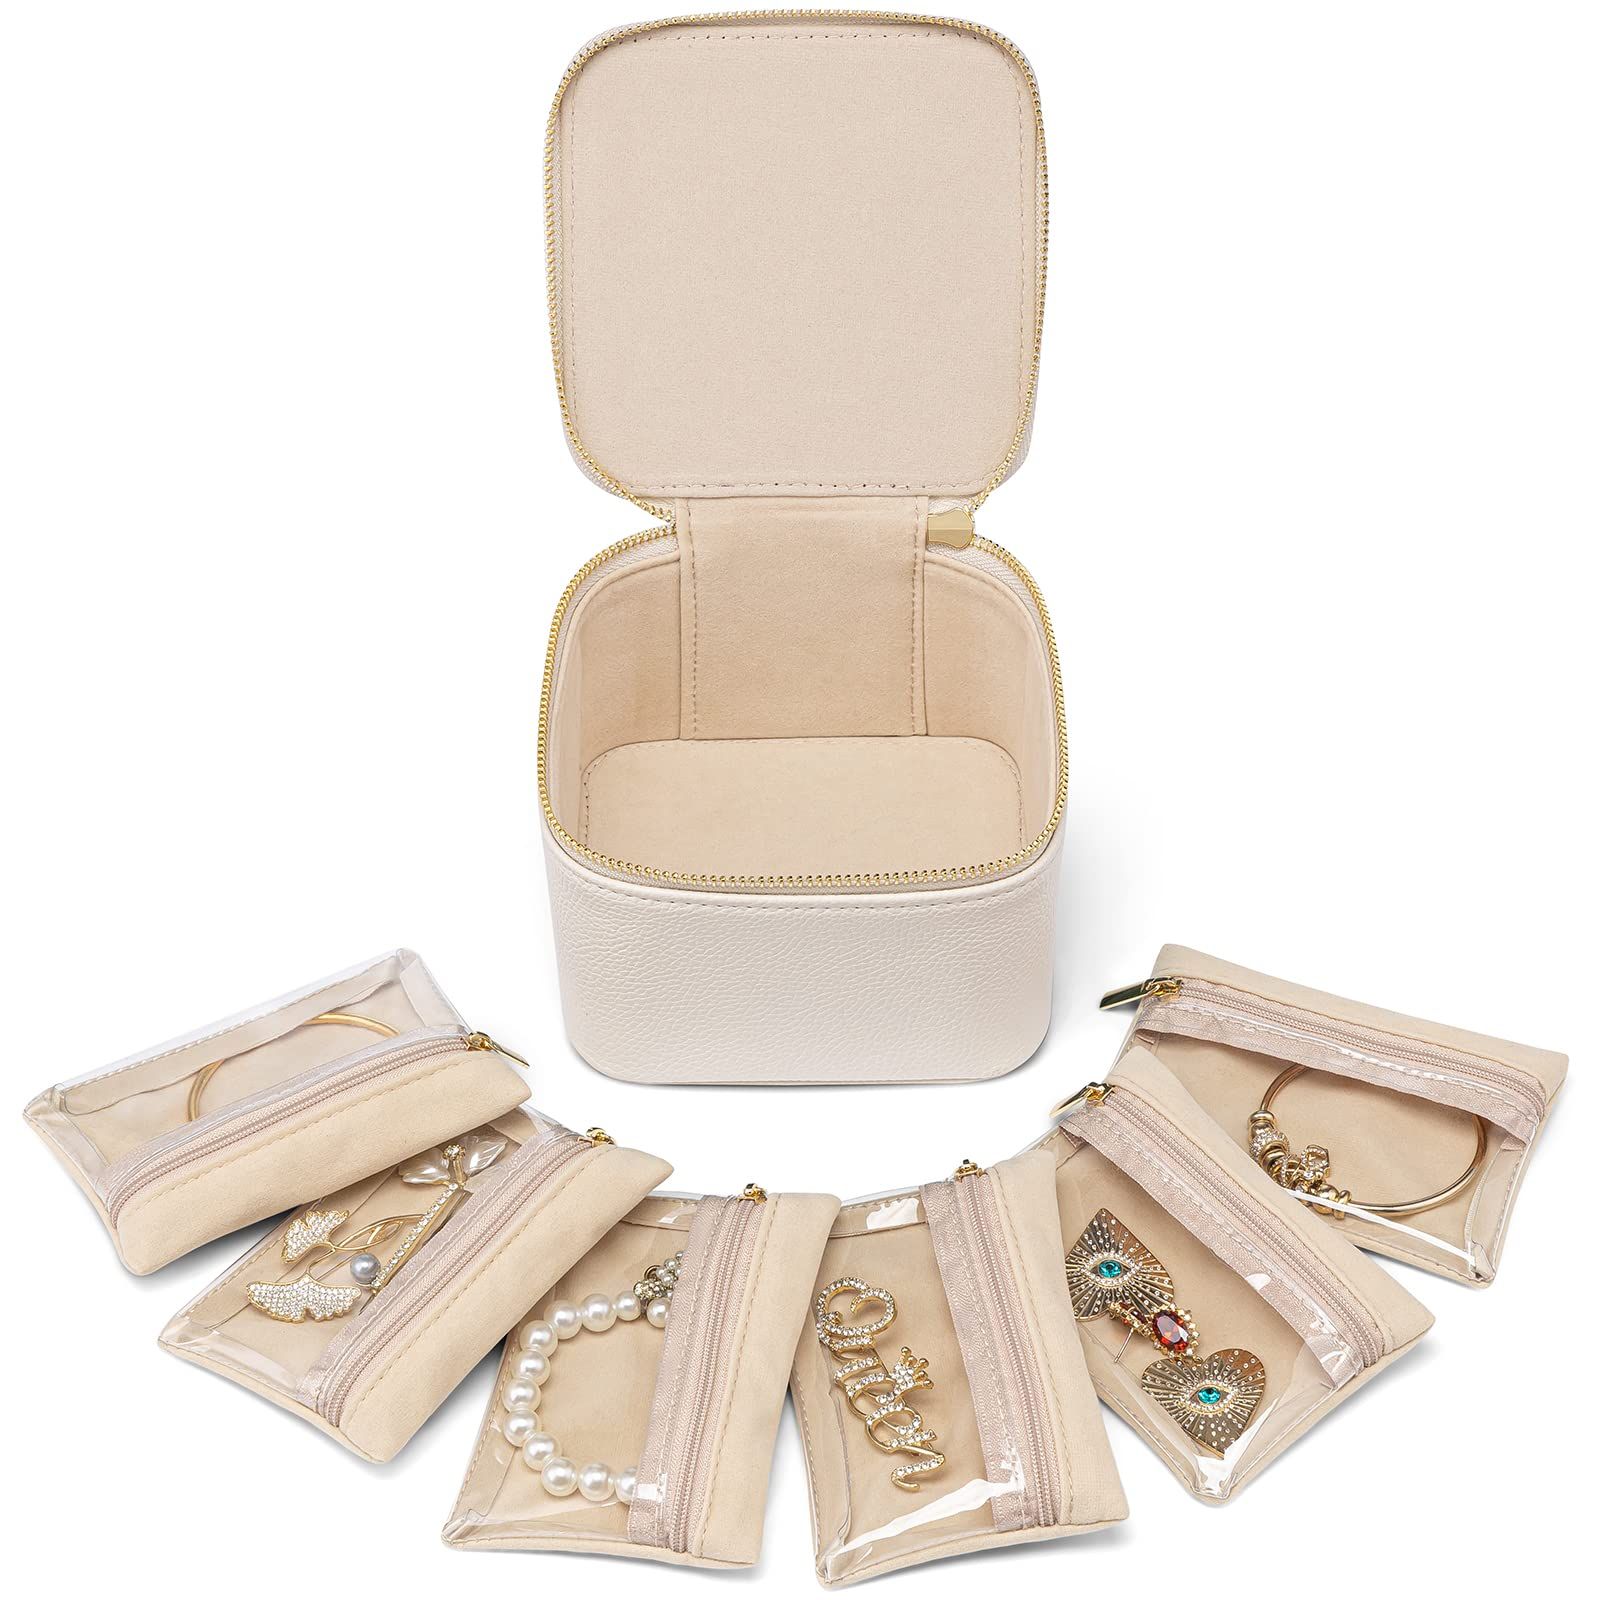 Vlando Small Jewelry Box Organizer,Travel Jewelry Storage with 6 Velvet Jewelry Zipper Pockets,Pr... | Amazon (US)